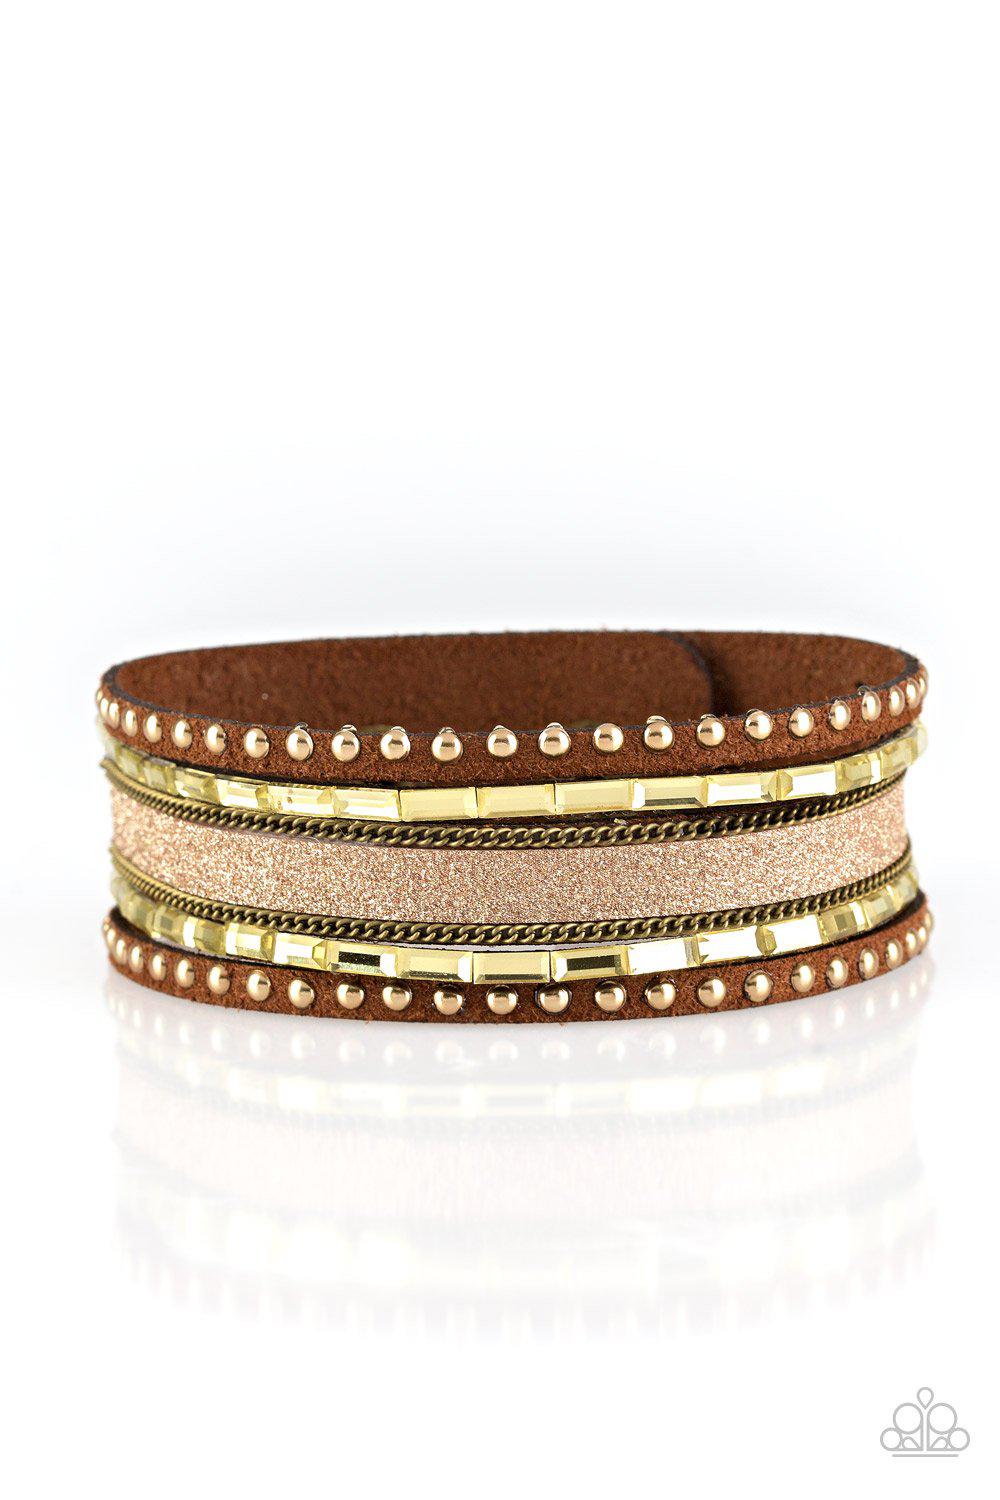 Seize The Sass Brass Urban Wrap Snap Bracelet - Paparazzi Accessories-CarasShop.com - $5 Jewelry by Cara Jewels